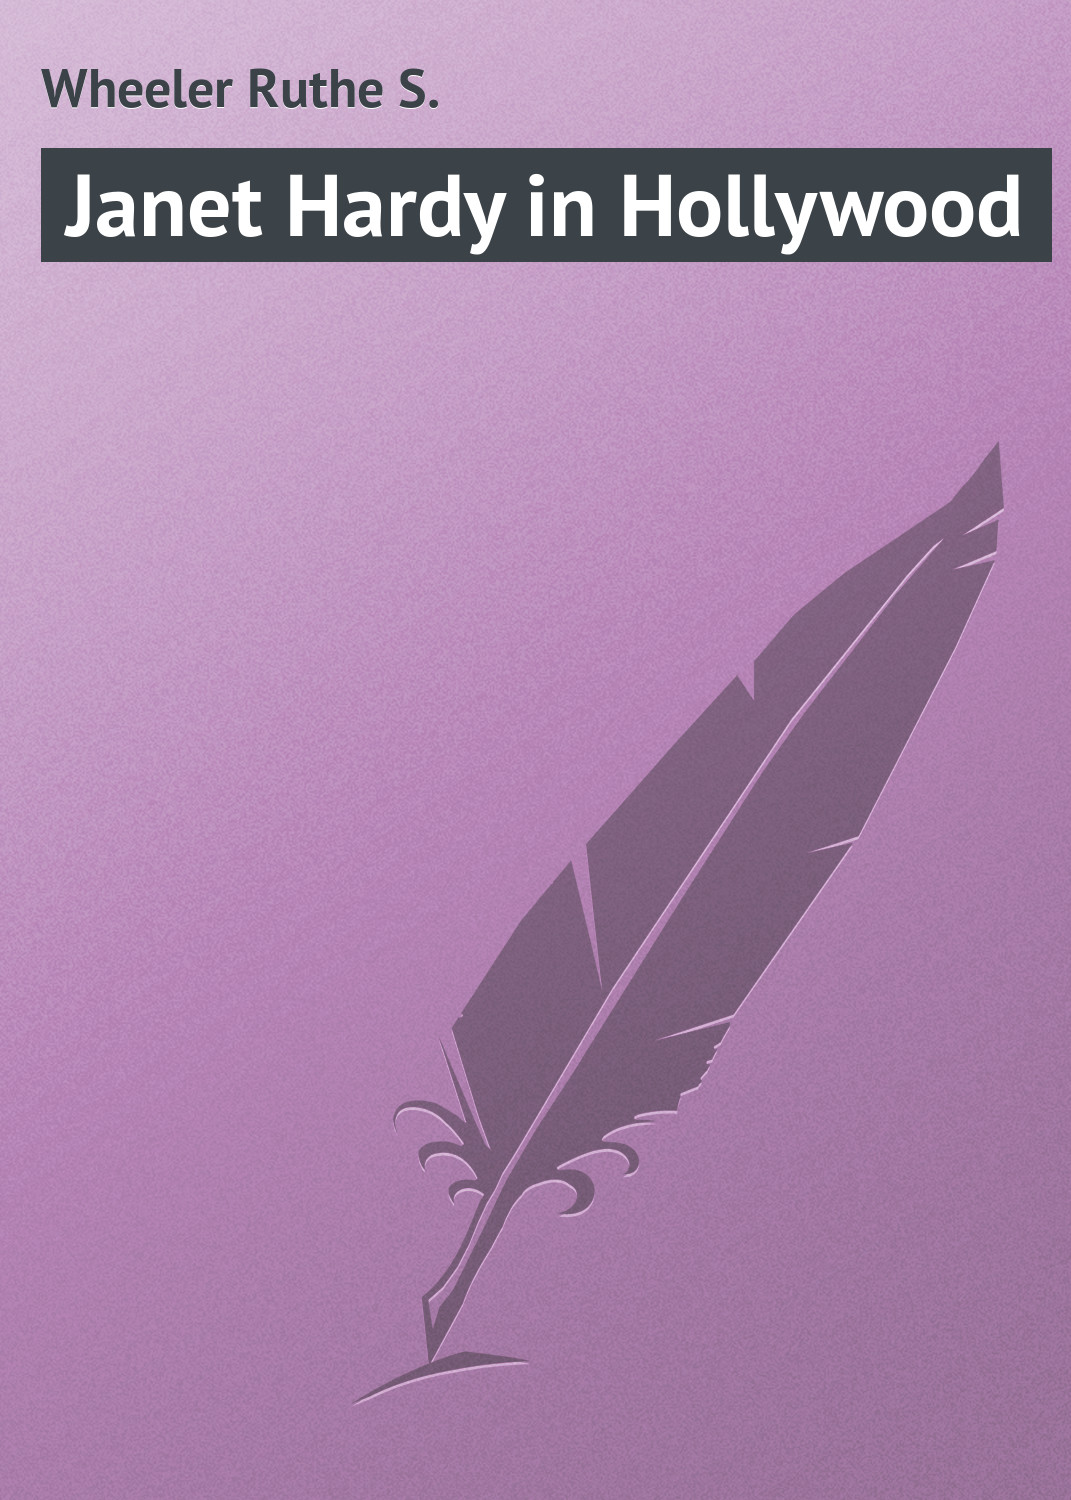 Книга Janet Hardy in Hollywood из серии , созданная Ruthe Wheeler, может относится к жанру Приключения: прочее, Зарубежная классика. Стоимость электронной книги Janet Hardy in Hollywood с идентификатором 23155155 составляет 5.99 руб.